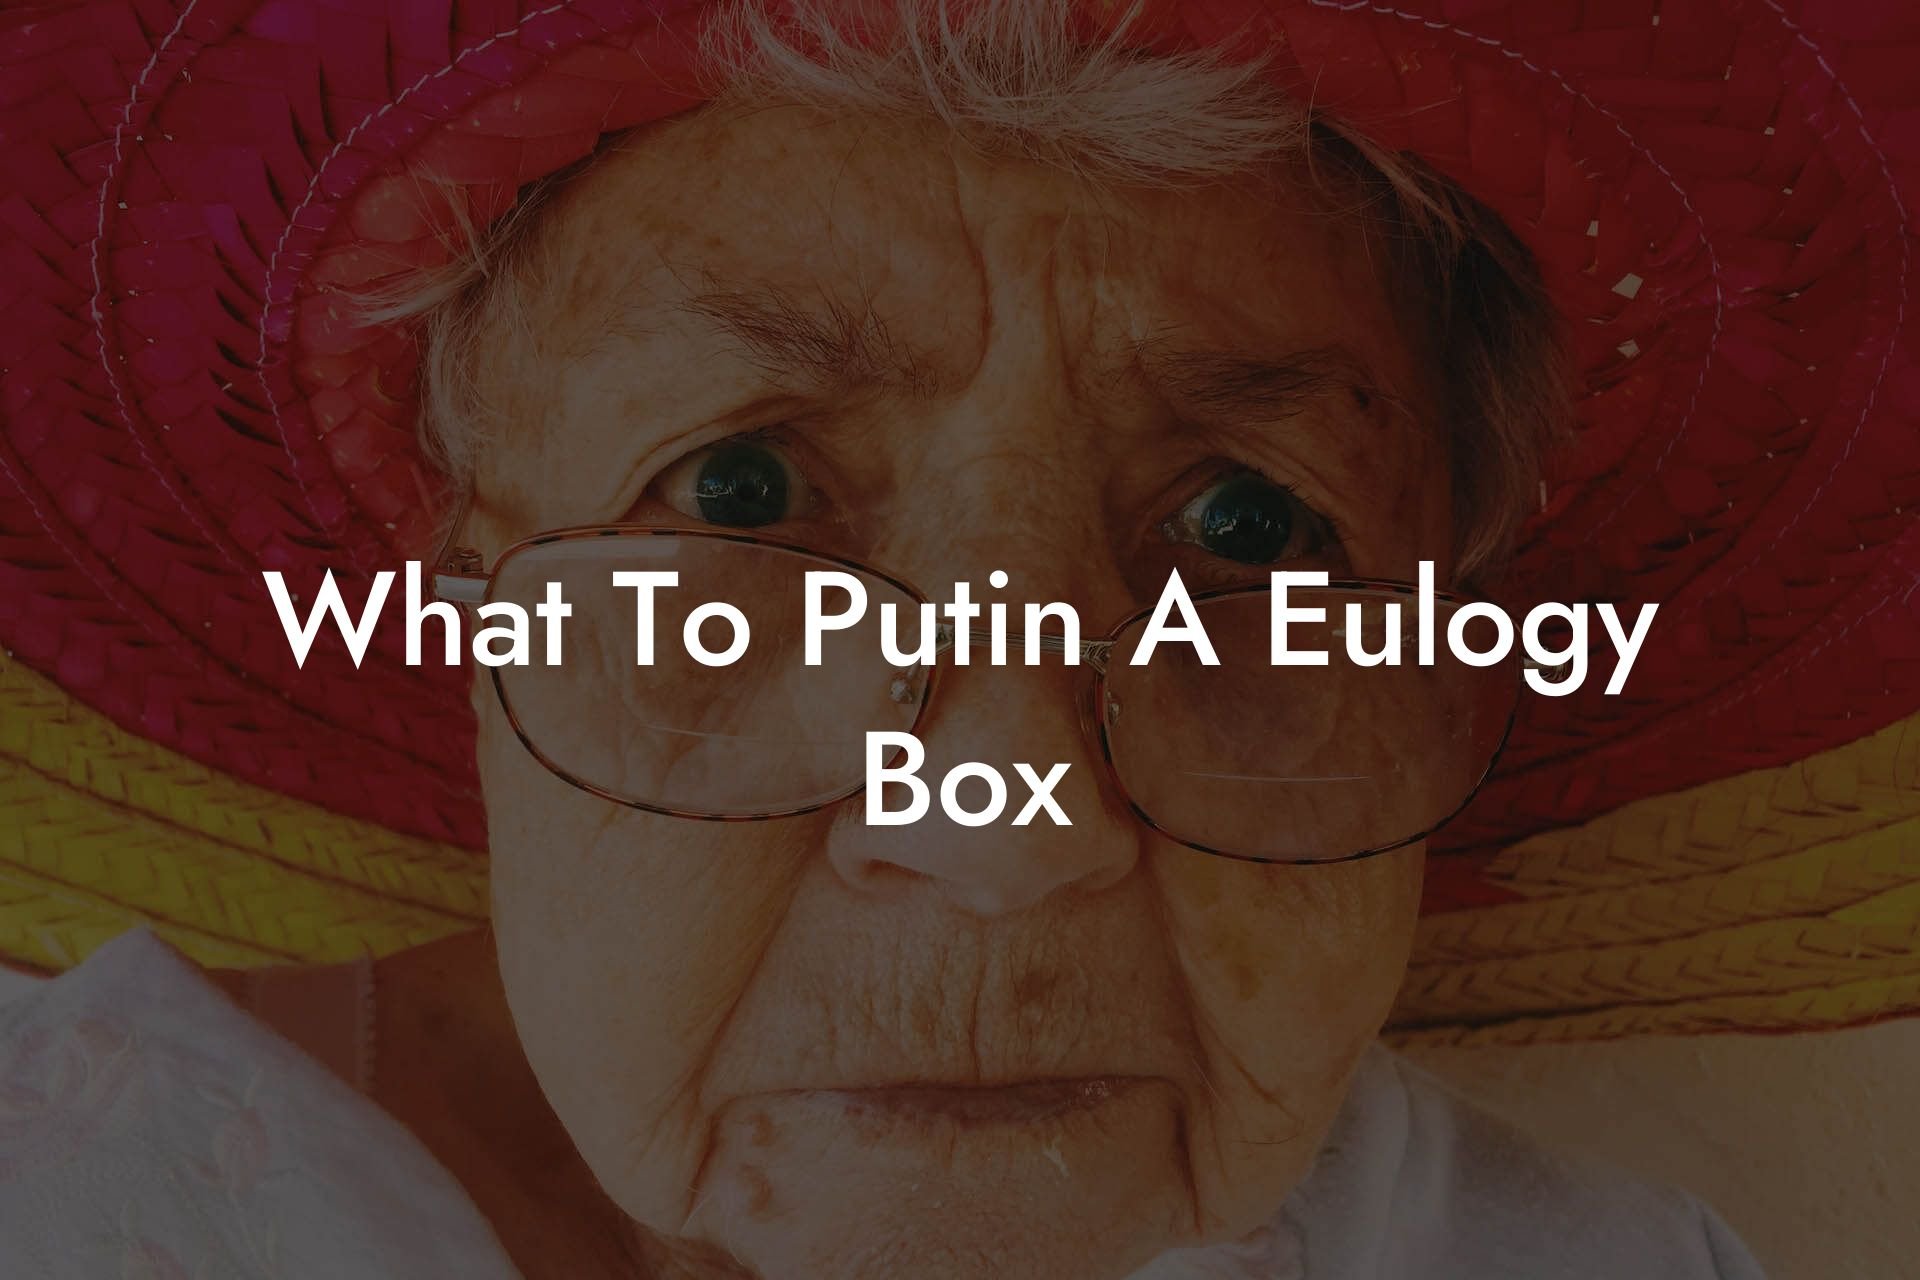 What To Putin A Eulogy Box